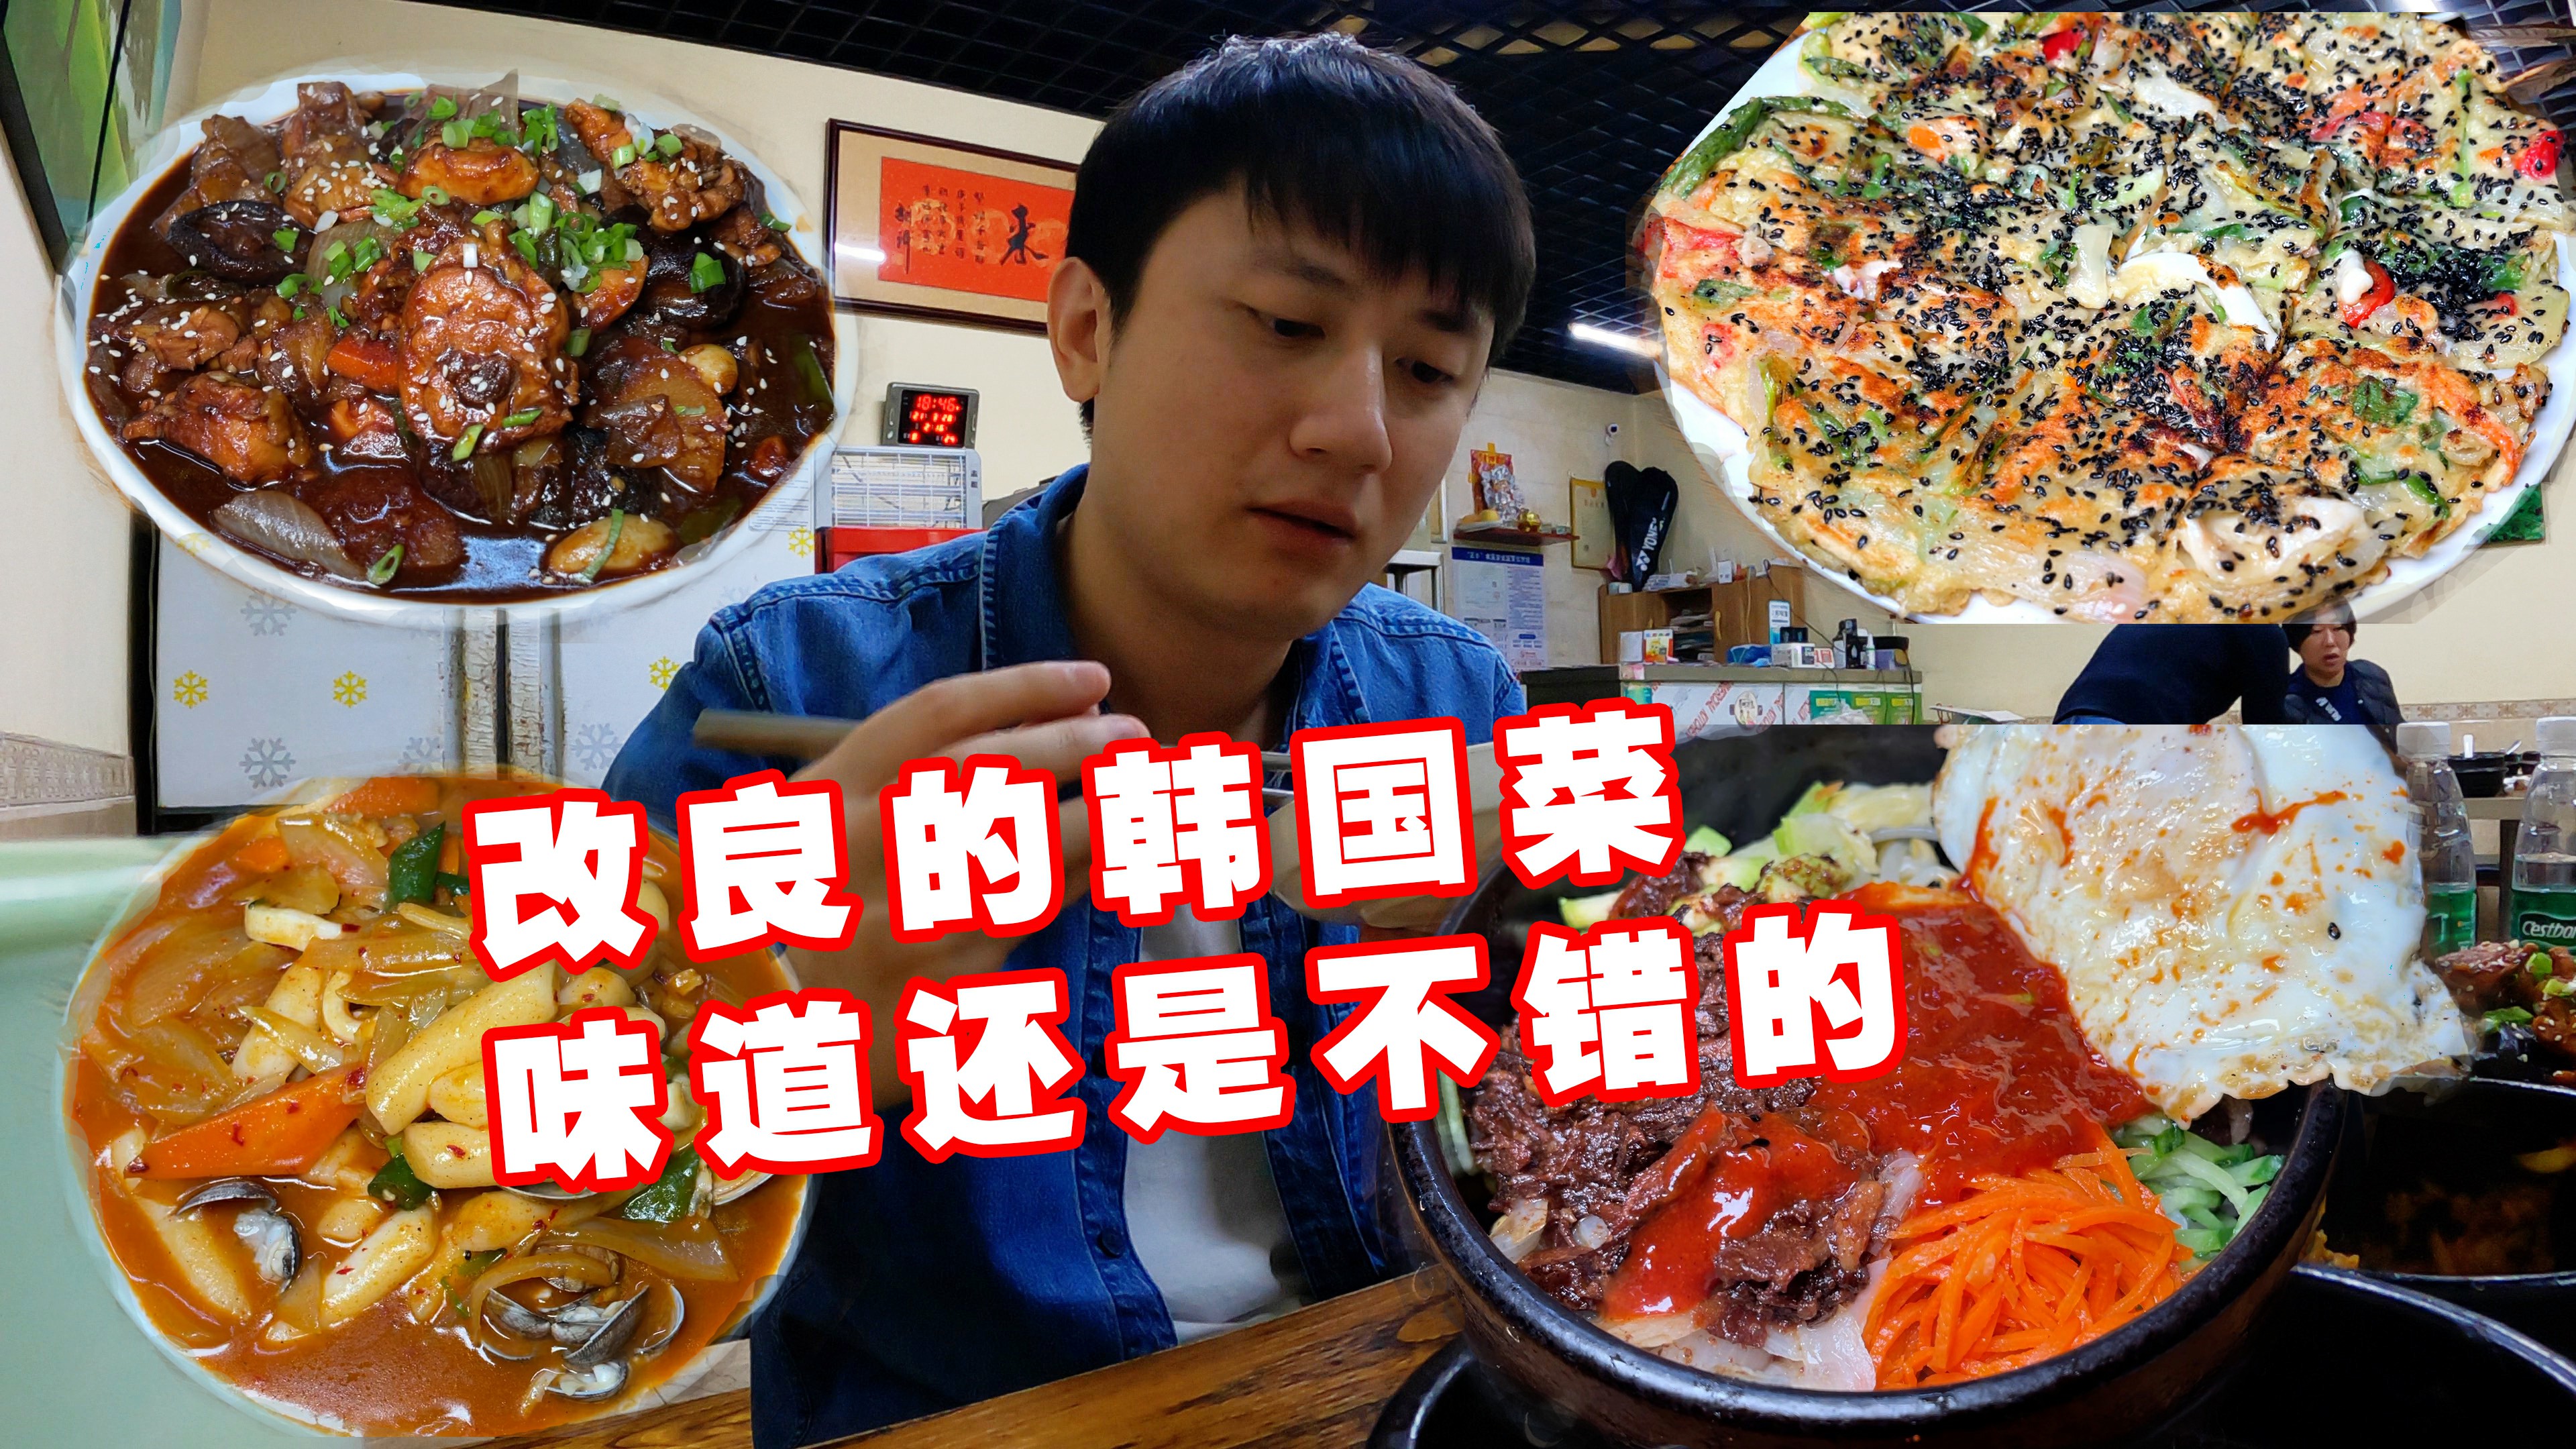 经营了13年的中韩料理店 每道菜都能看出用心做菜时怎么回事